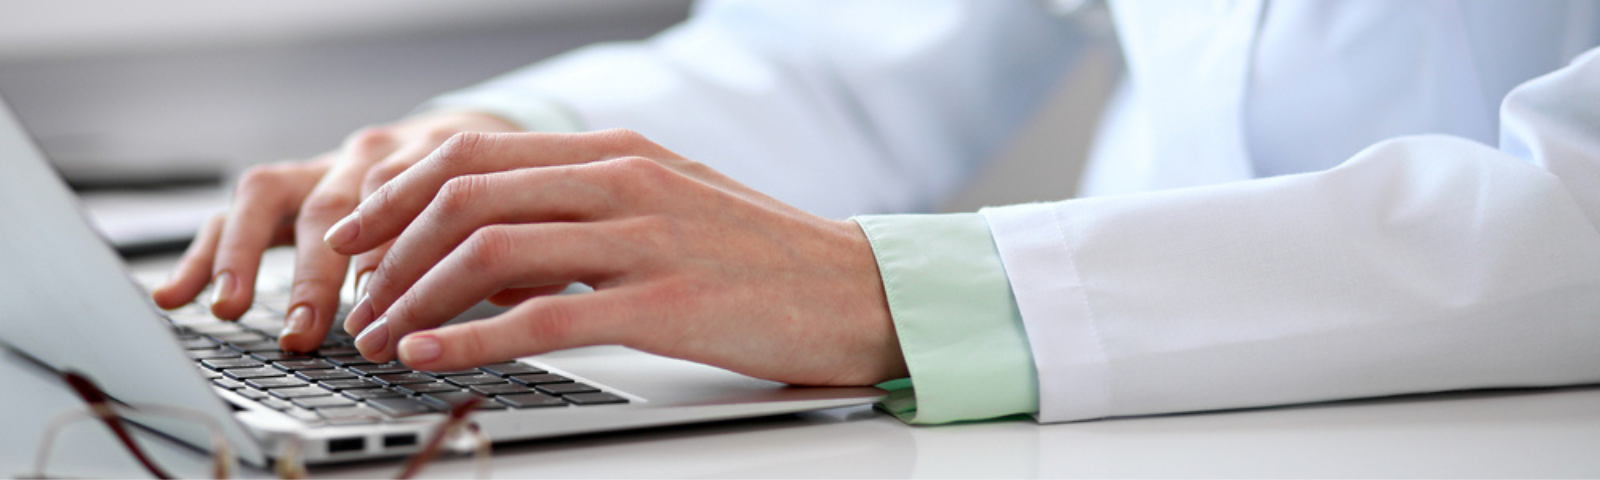 Foto con foco selectivo en manos de un médico que está digitando en el tablero frente al computador